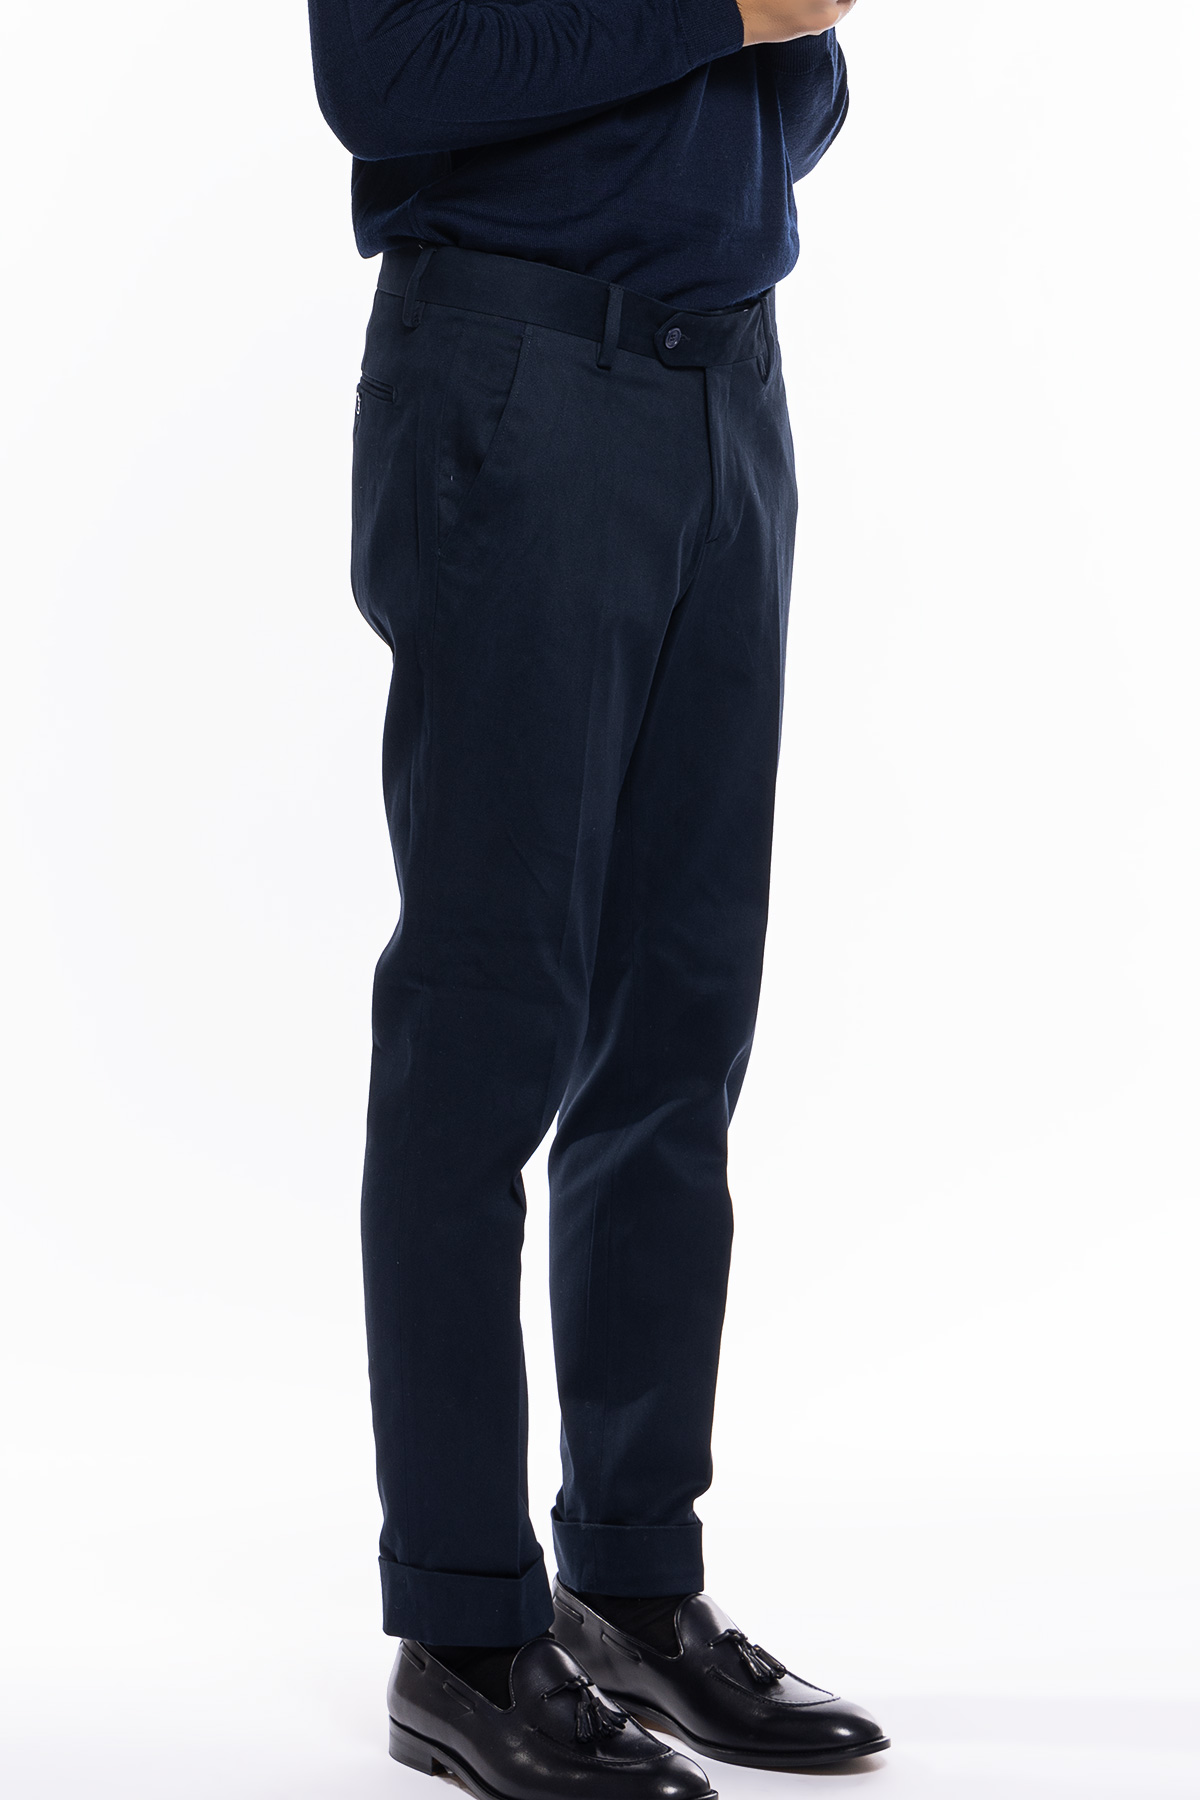 Pantalone uomo navy blu tasca america in cotone slim fit con risvolto di 5cm